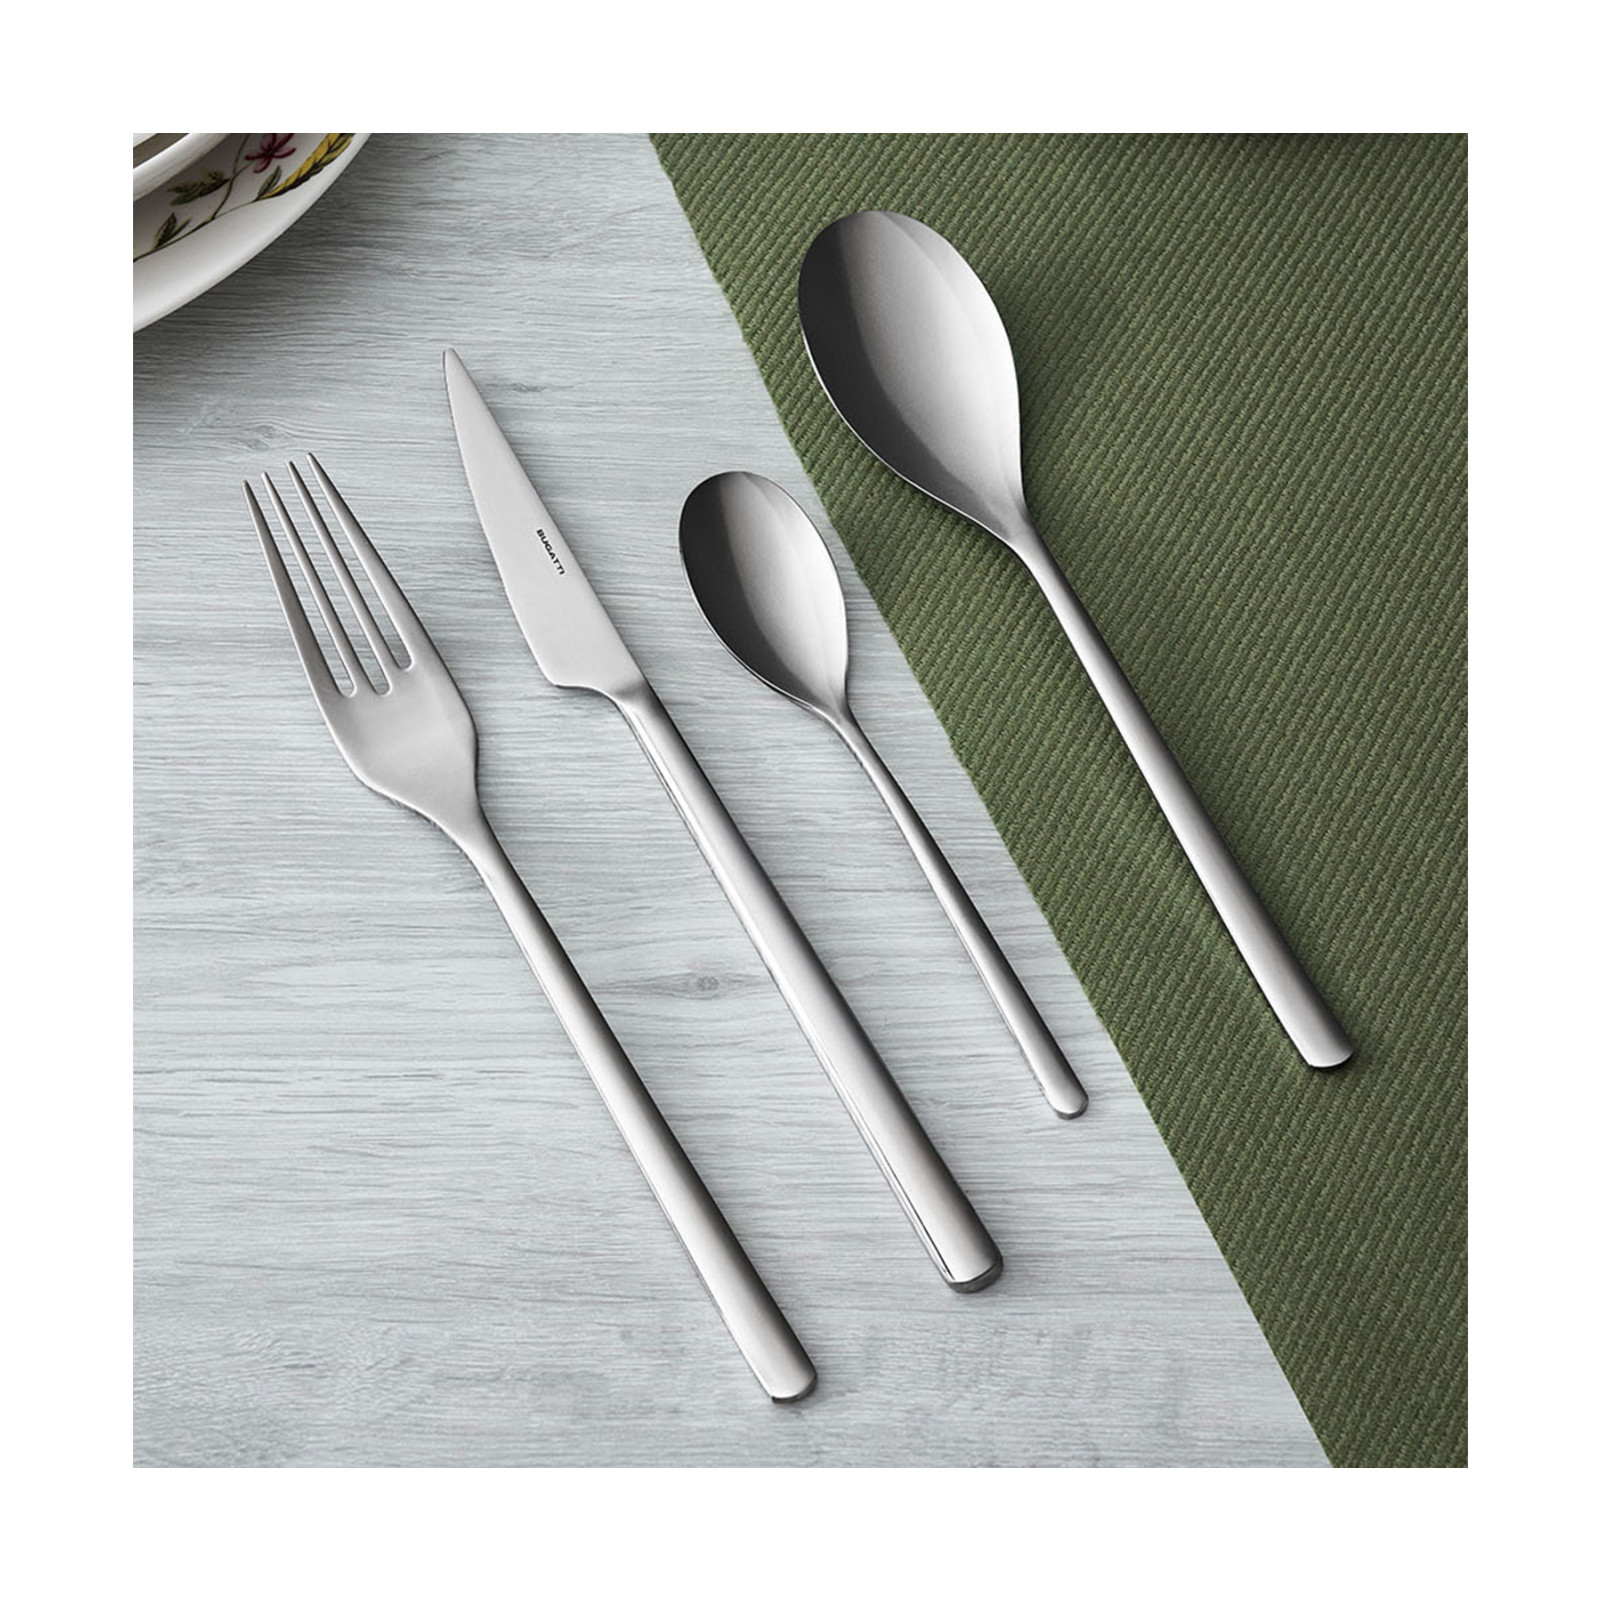 small accessories - home appliances kitchen cutlery, Bugatti and Designer